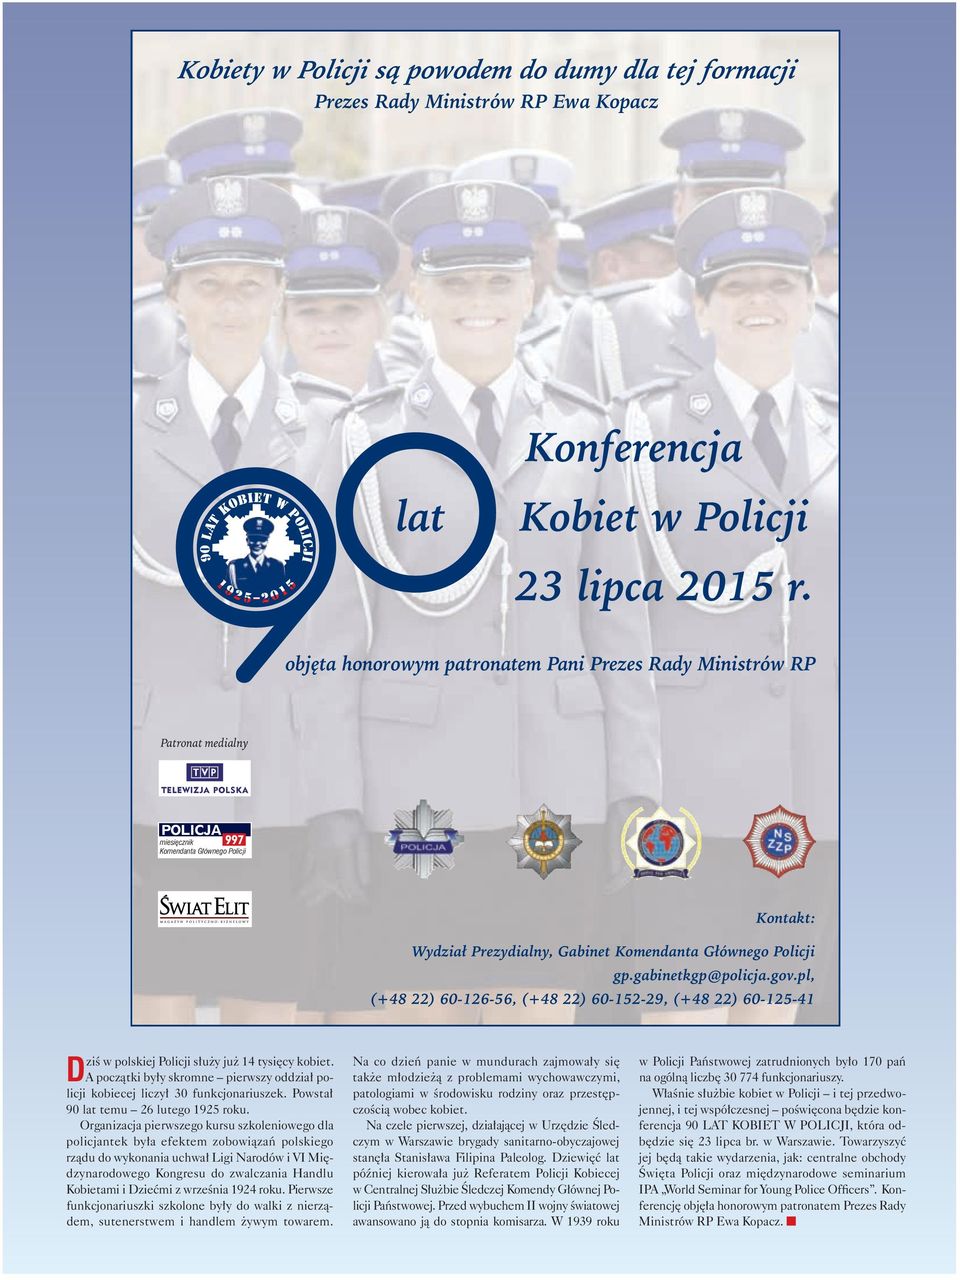 gabinetkgp@policja.gov.pl, (+48 22) 60-126-56, (+48 22) 60-152-29, (+48 22) 60-125-41 ziś w polskiej Policji służy już 14 tysięcy kobiet.